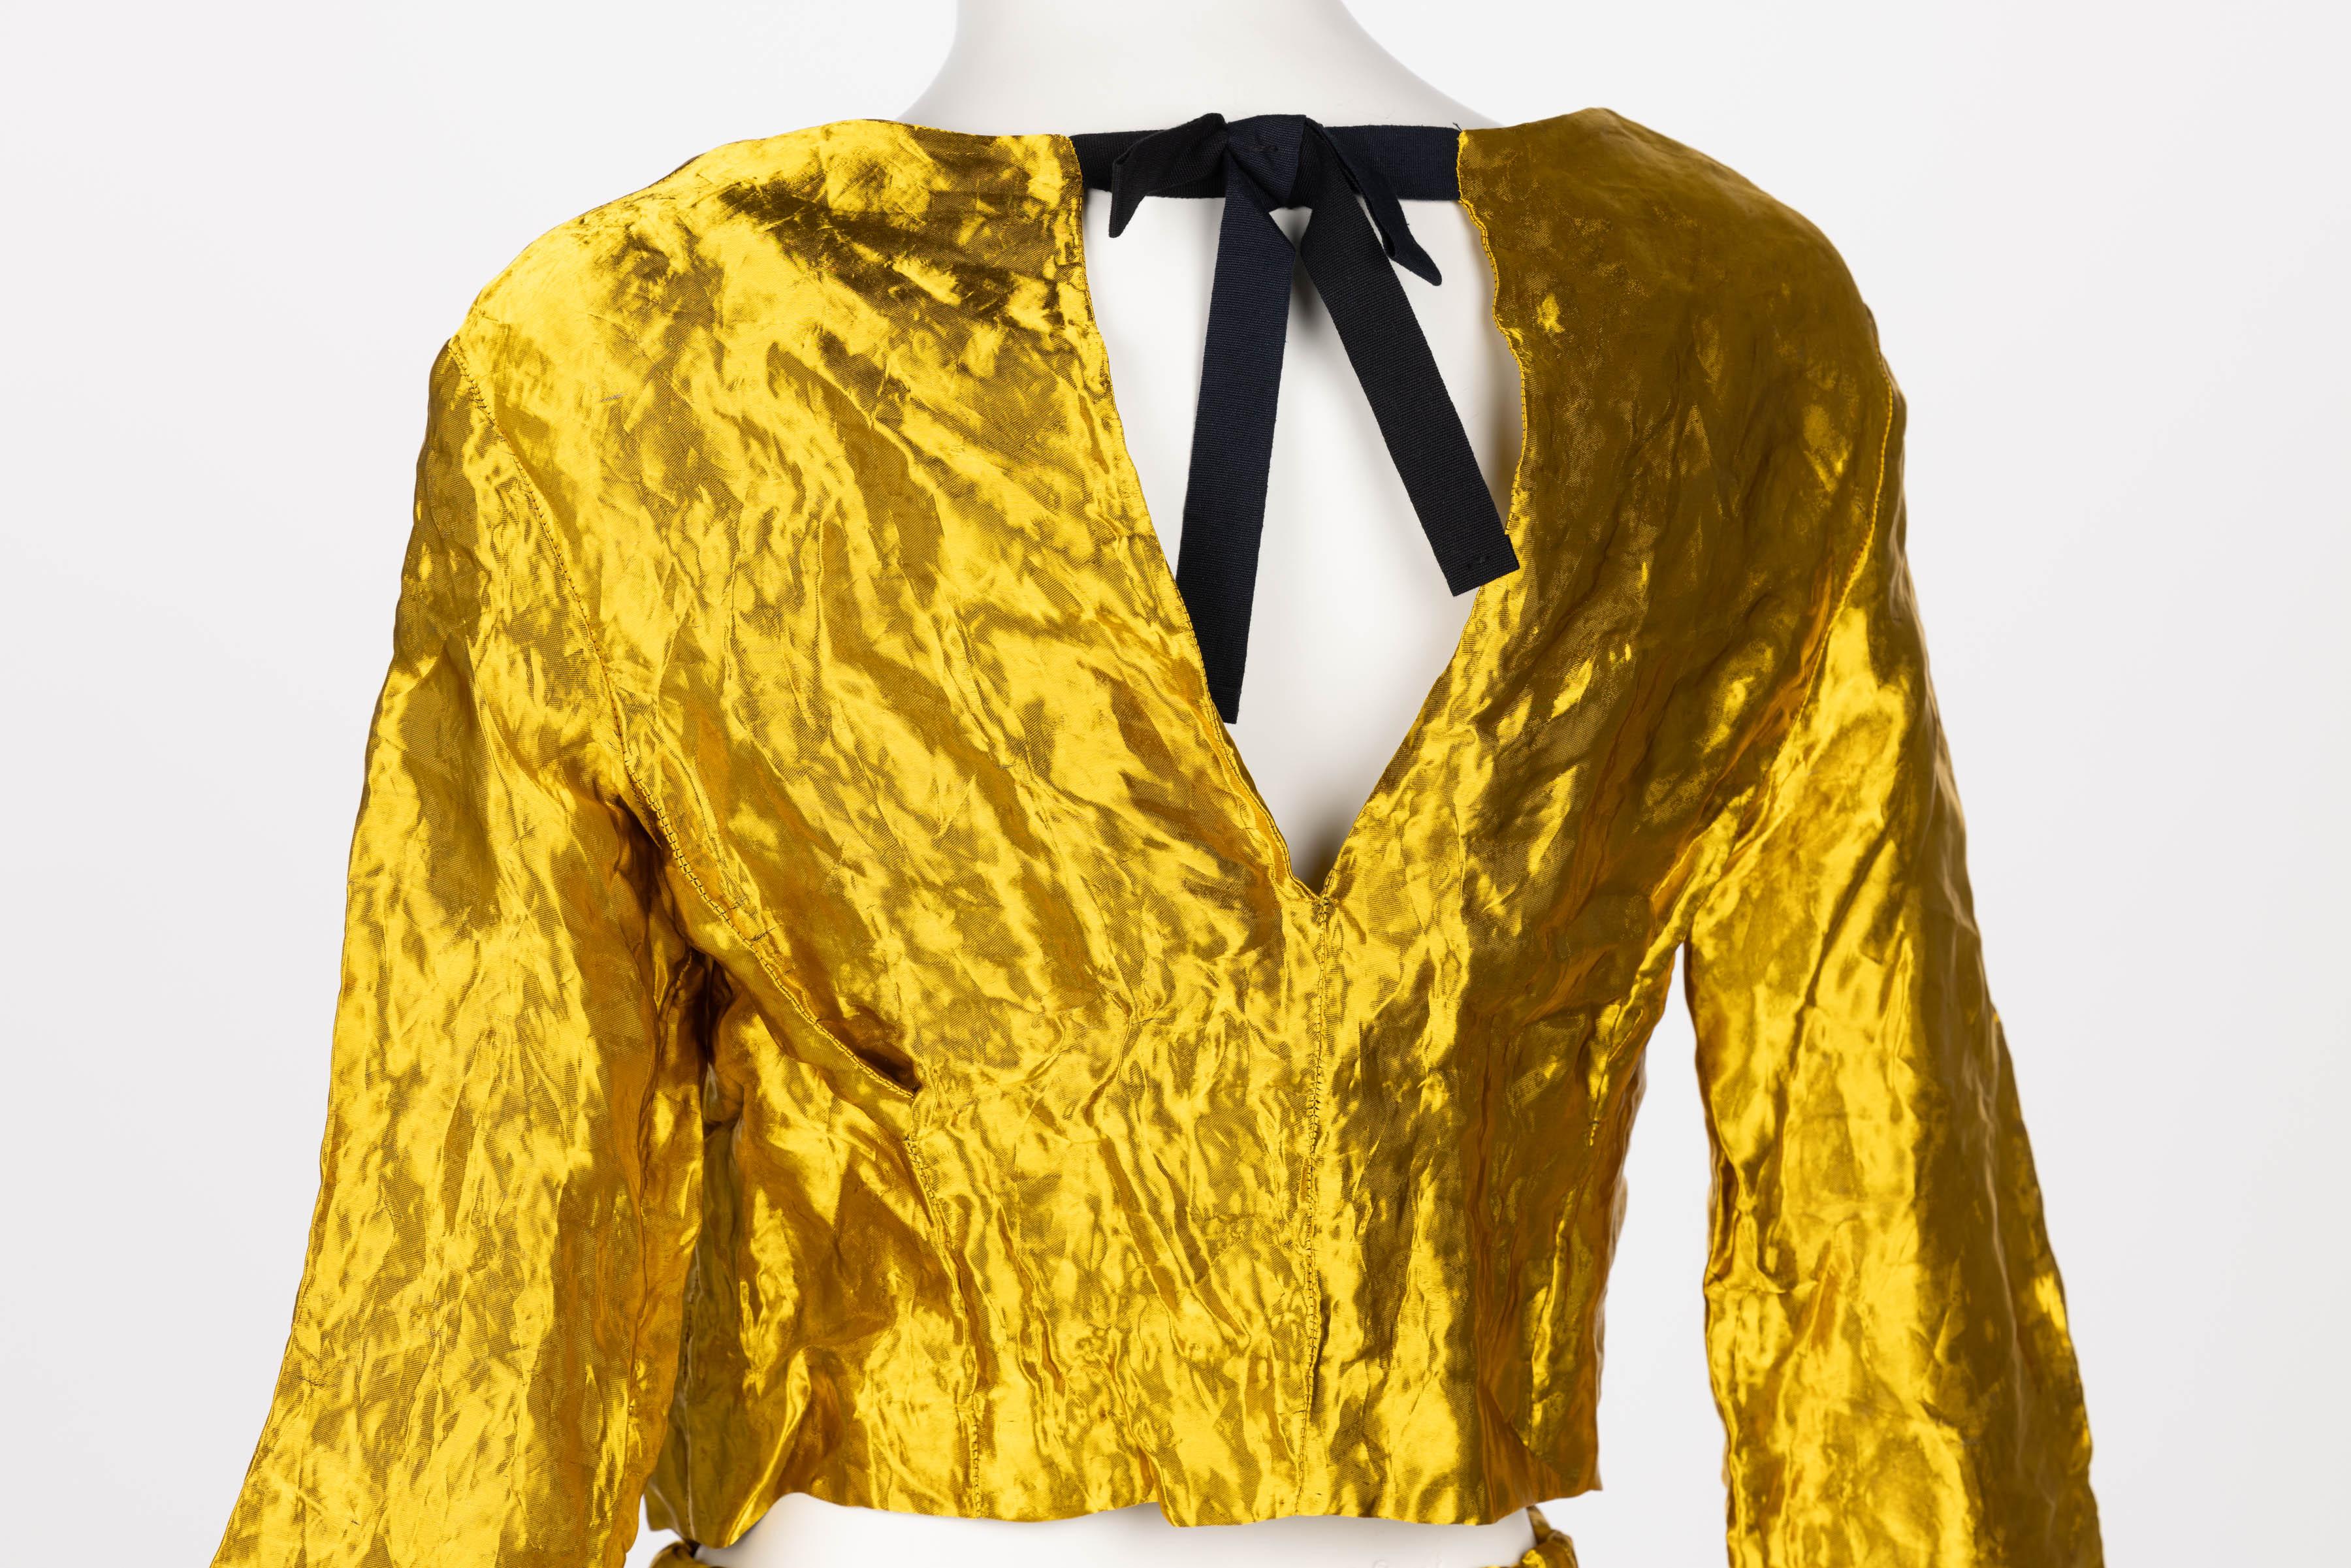 Prada Gold Metal Jacket Top & Skirt Set Spring 2009 6